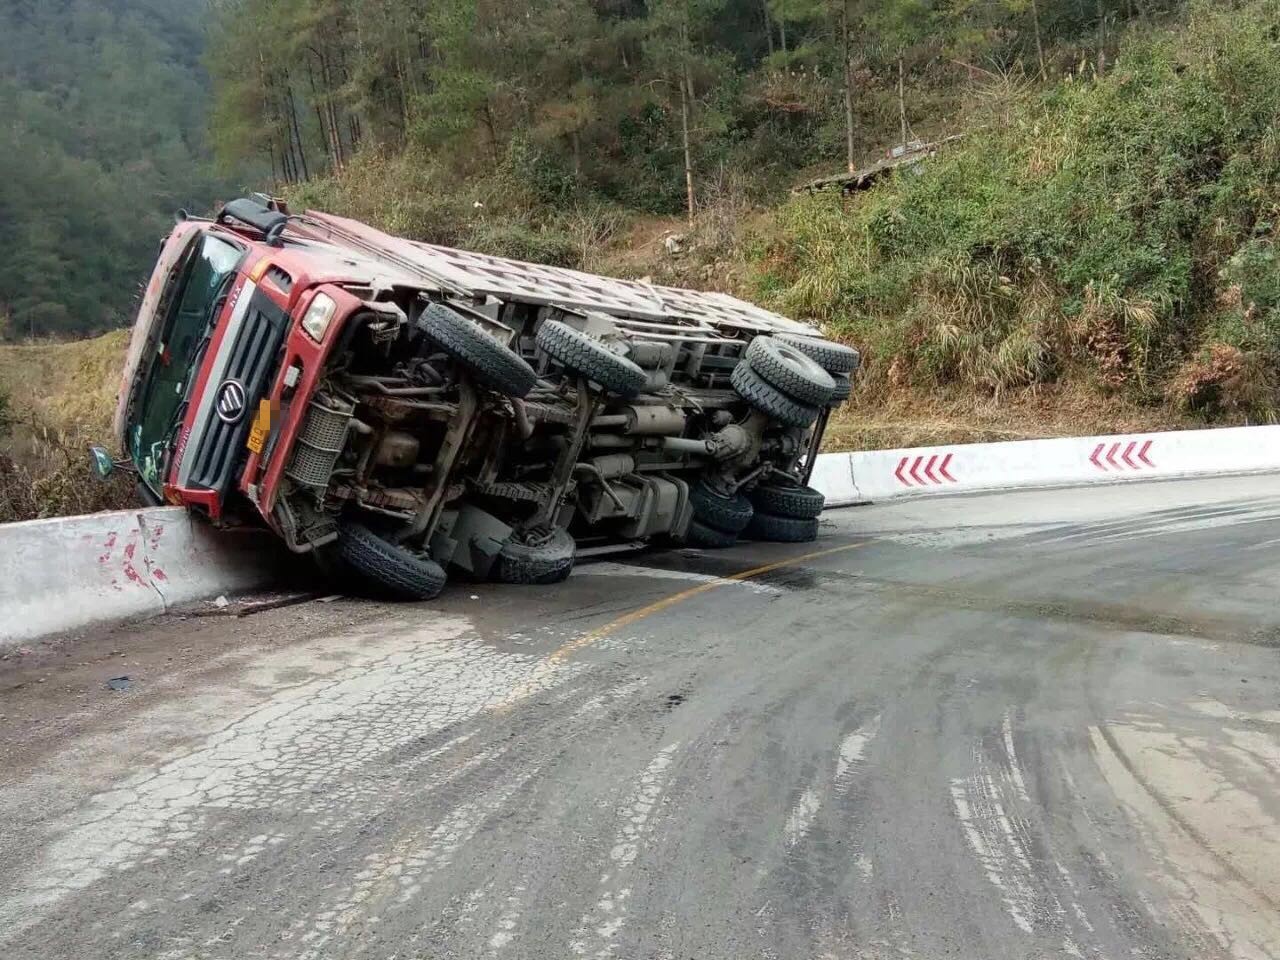 【微友新闻】货车过弯时突然就侧翻了,所幸没有造成人员伤亡